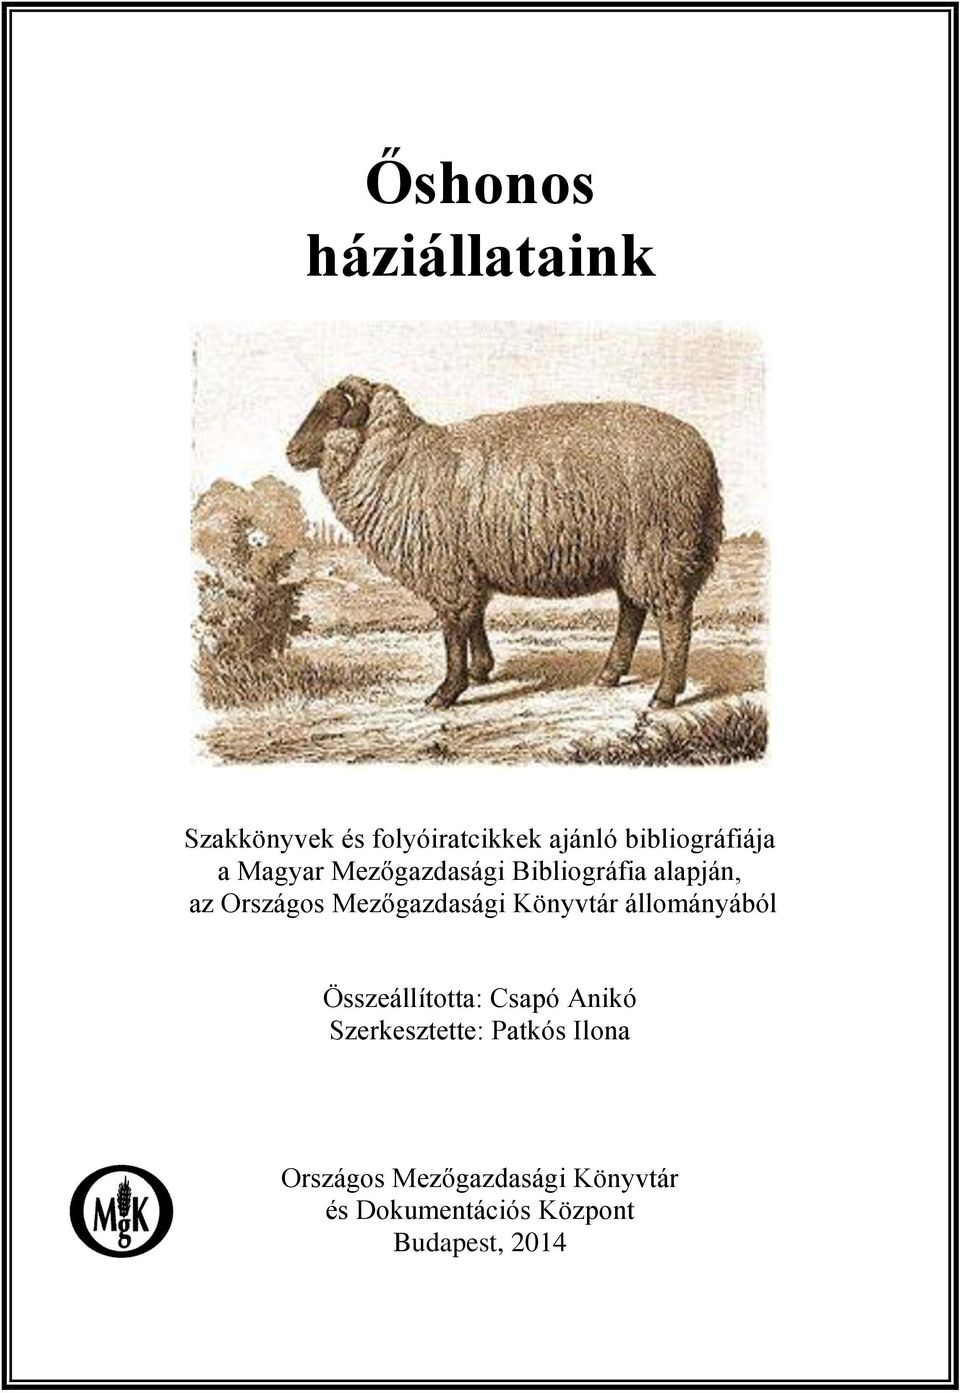 Mezőgazdasági Könyvtár állományából Összeállította: Csapó Anikó